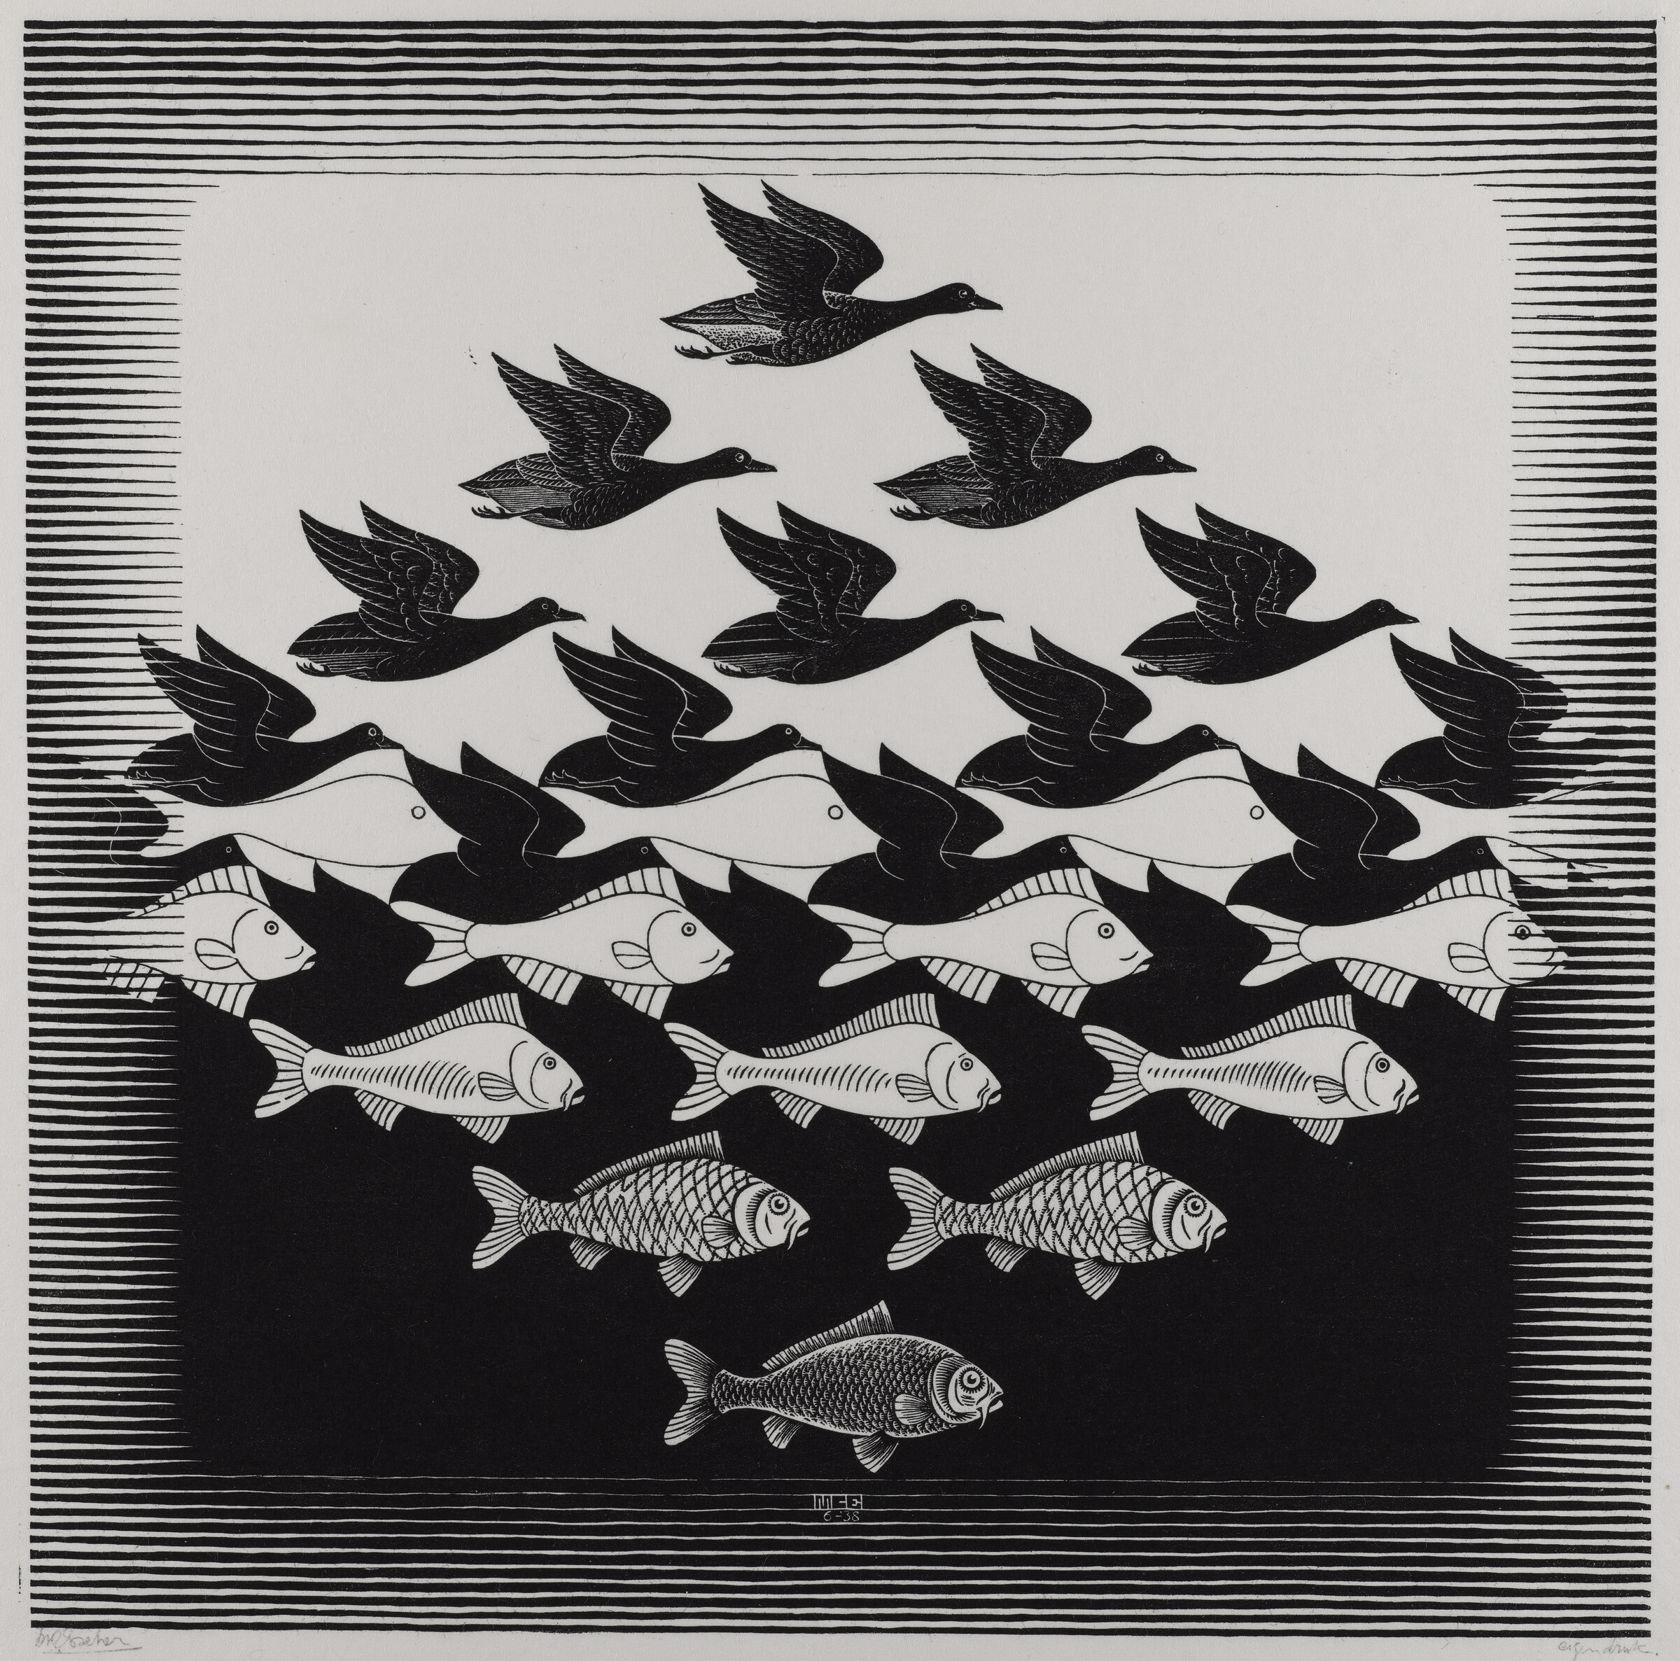 Mathematics and the Art of M.C. Escher